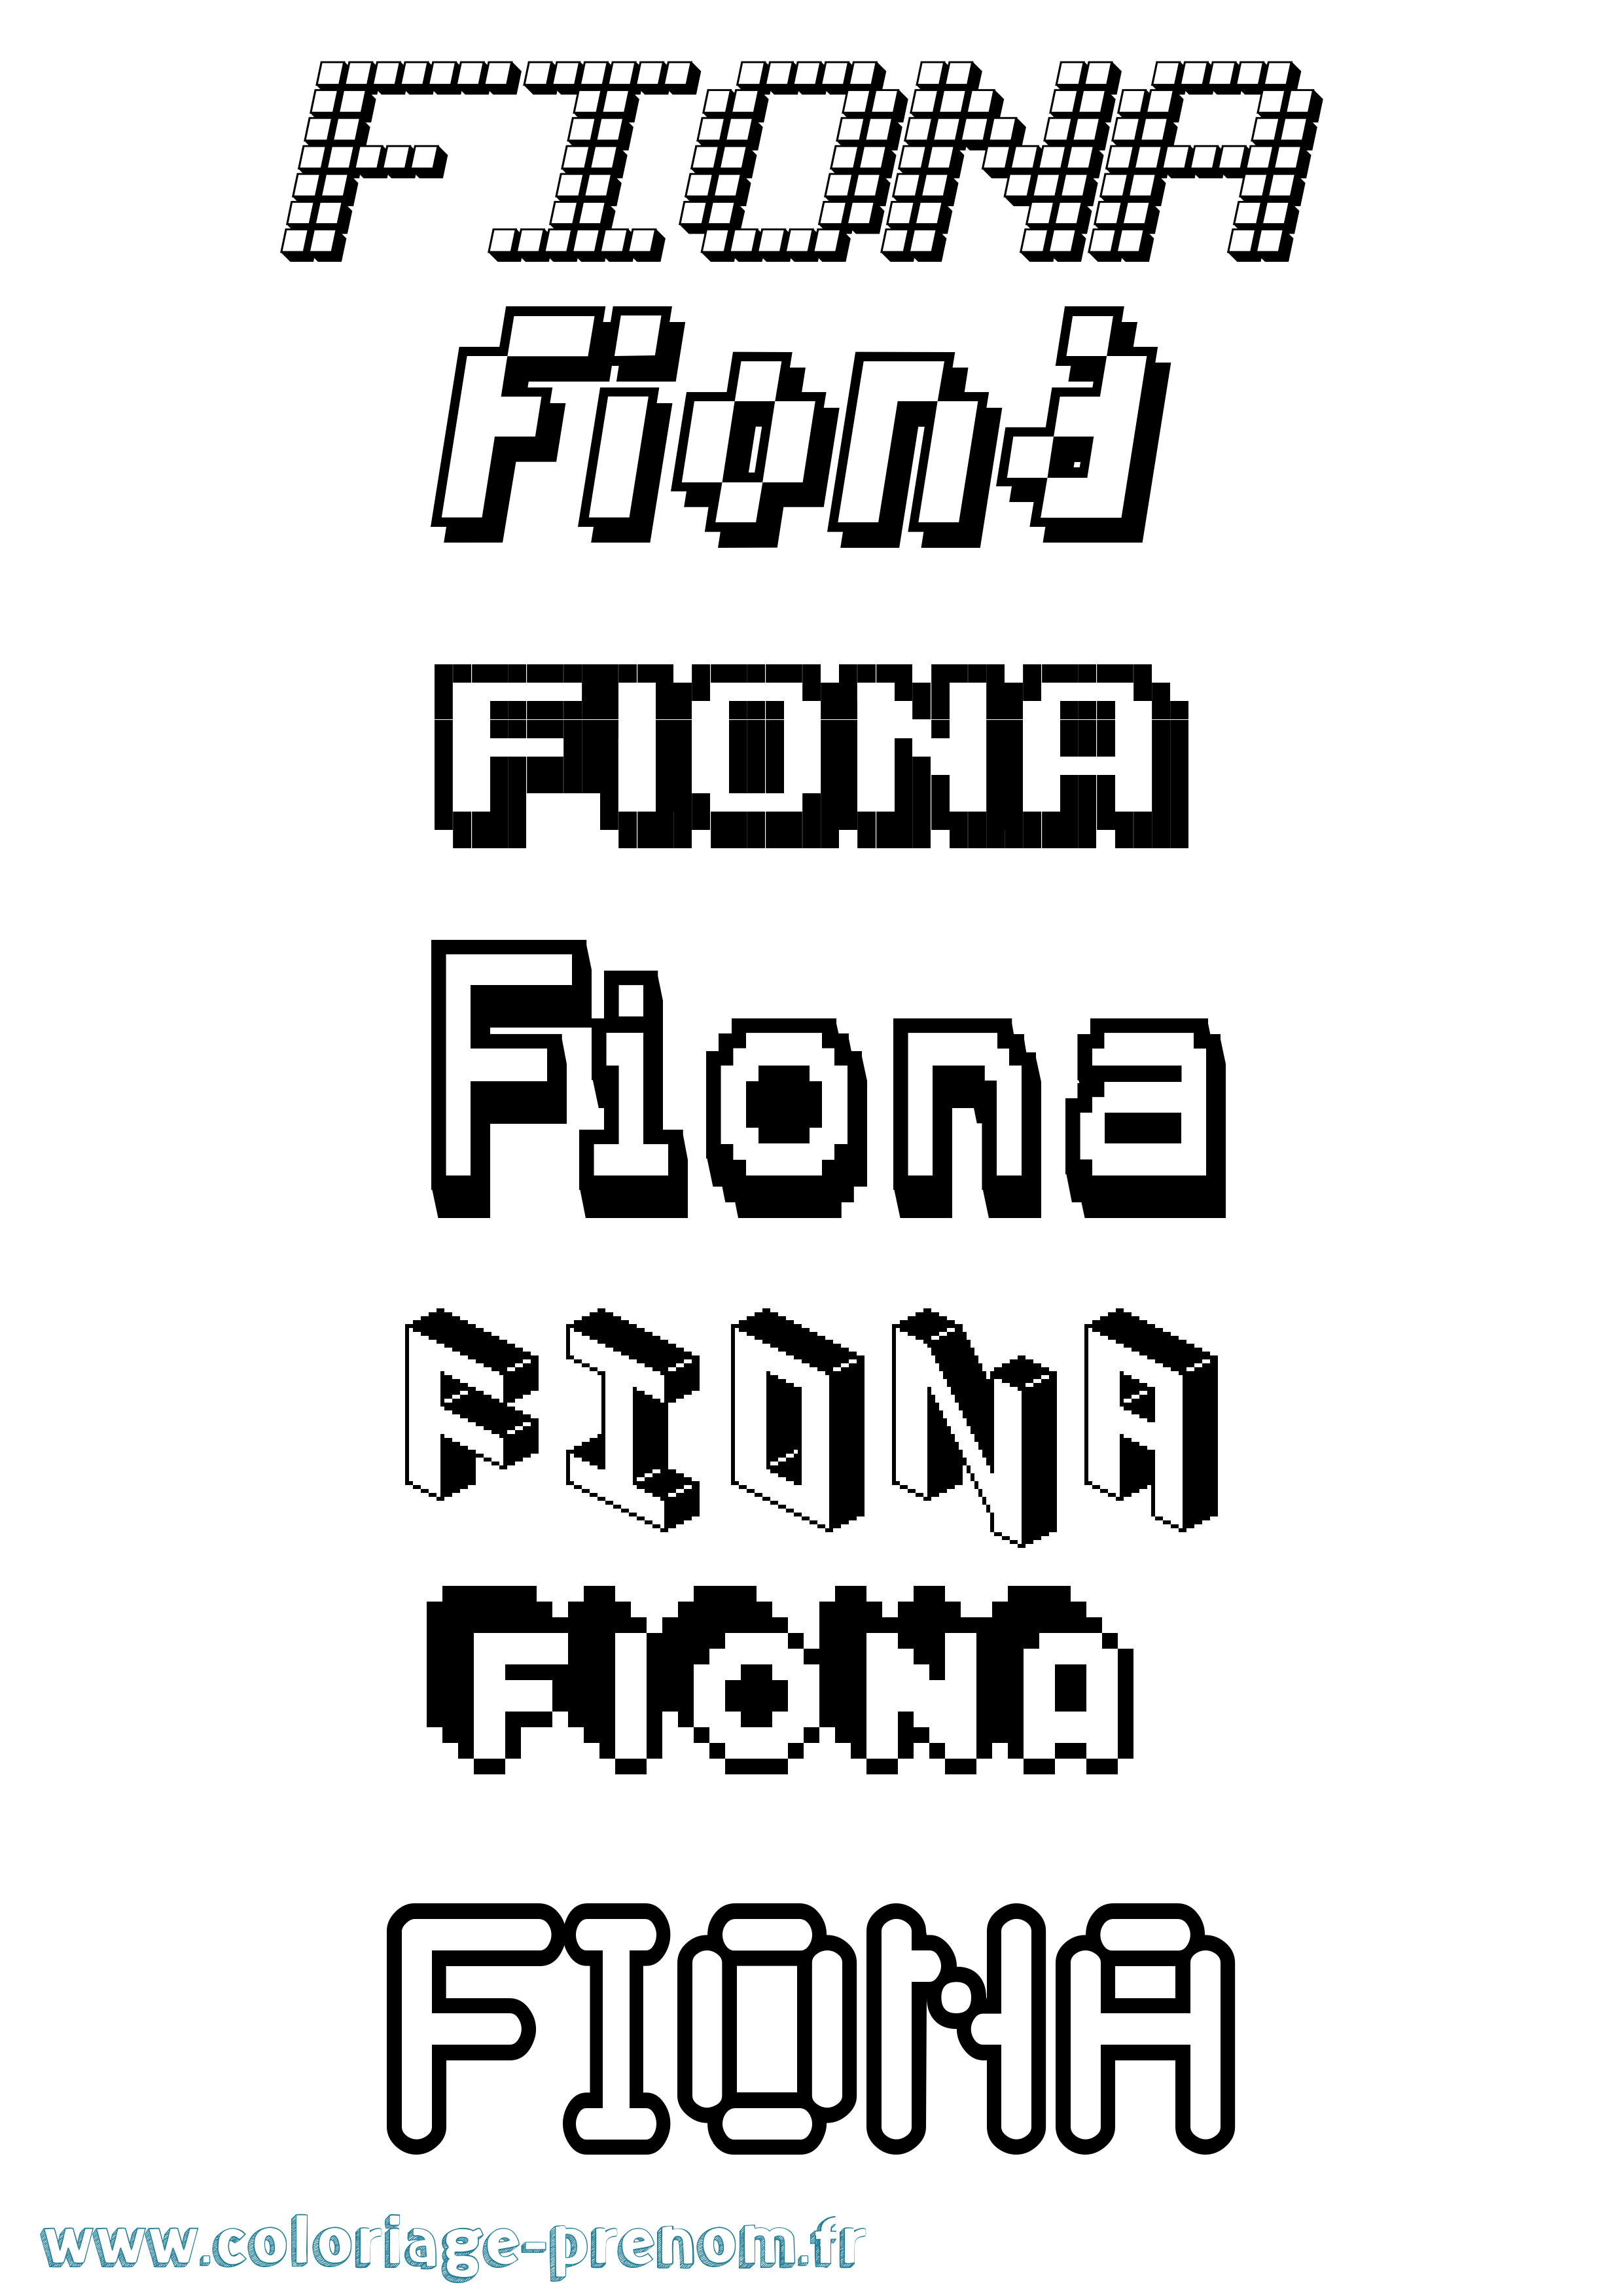 Coloriage prénom Fiona